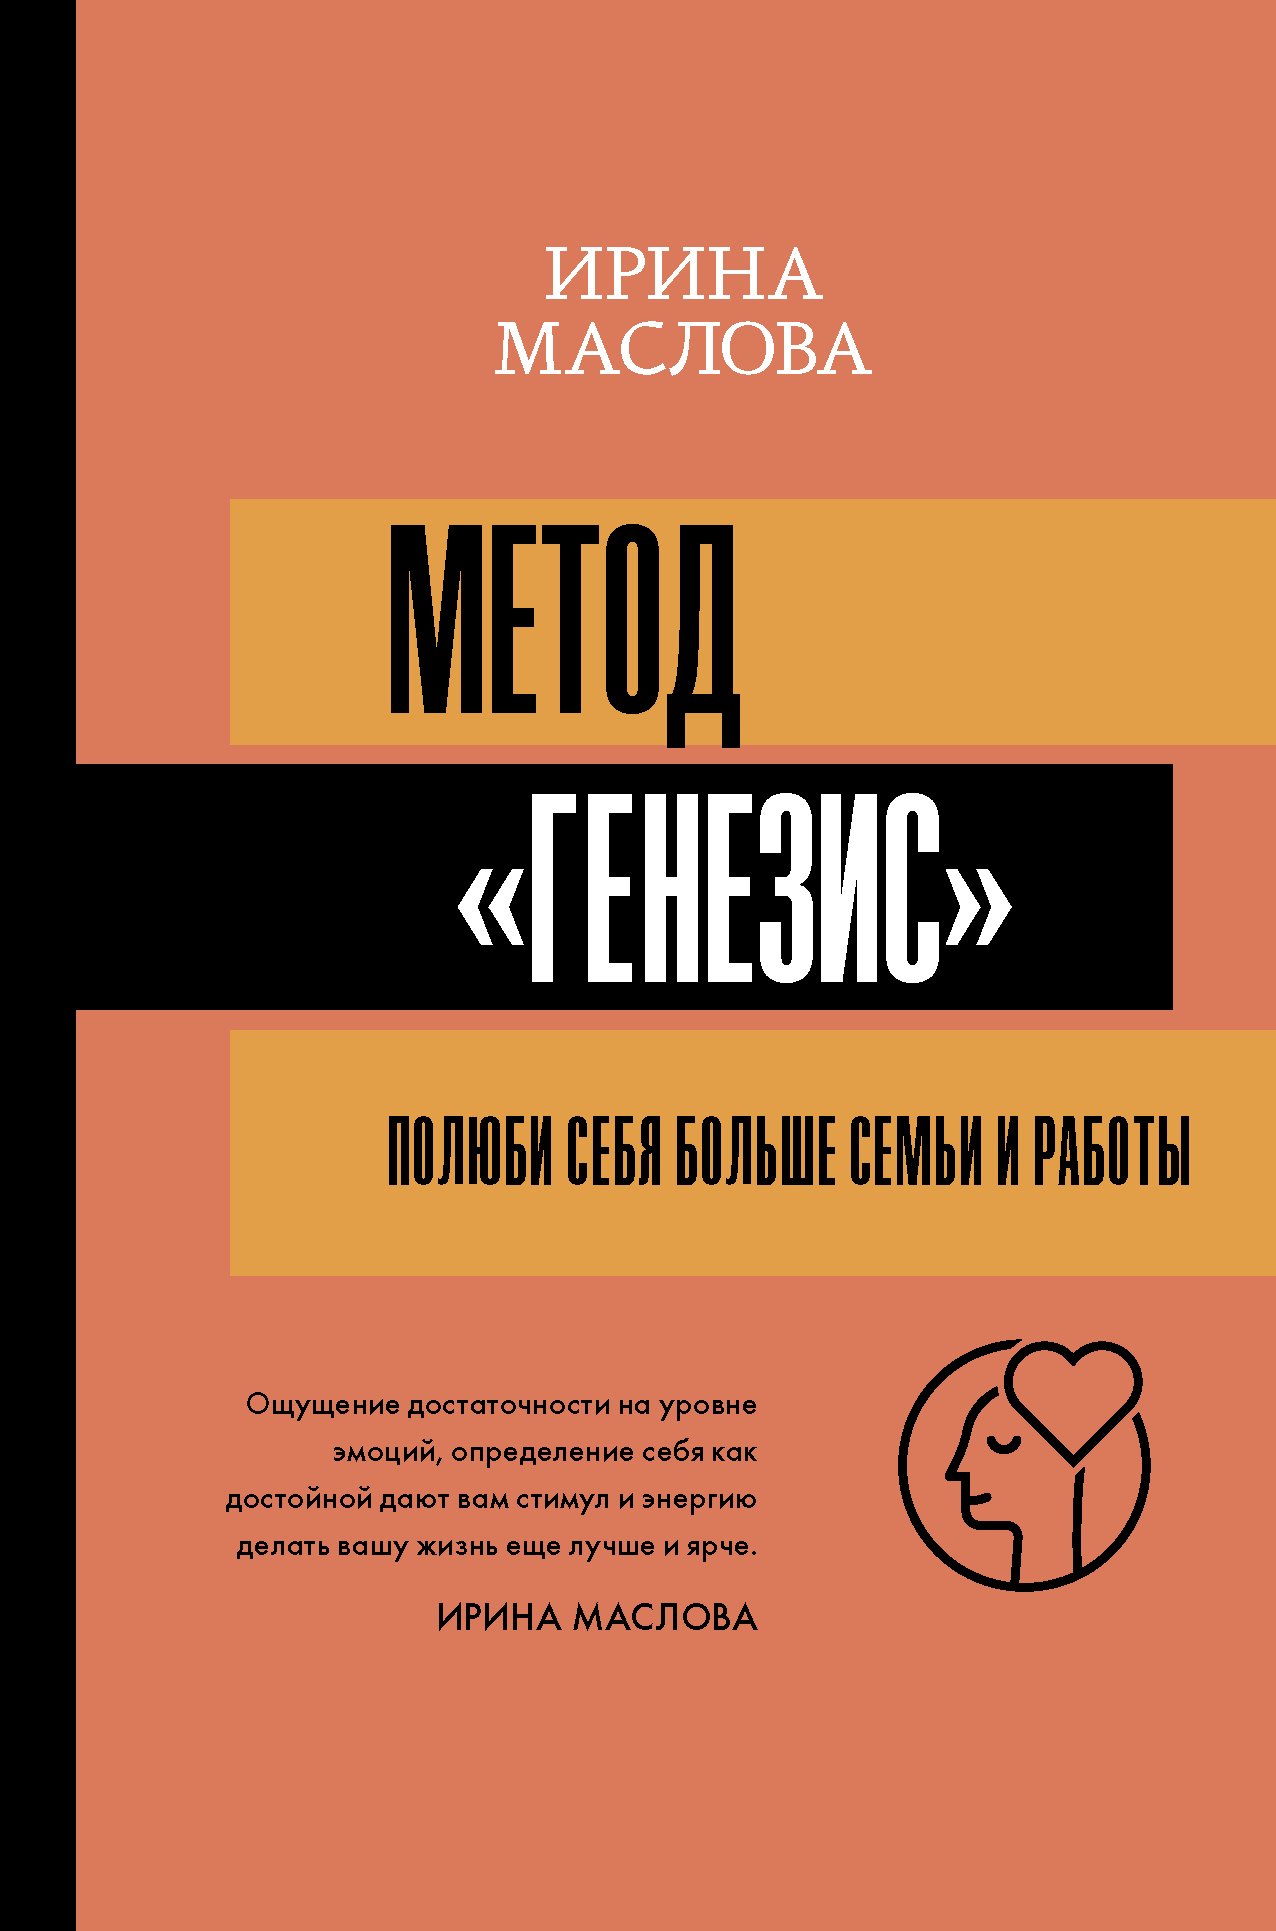 Метод «Генезис»: полюби себя больше семьи и работы (с автографом). Маслова Ирина